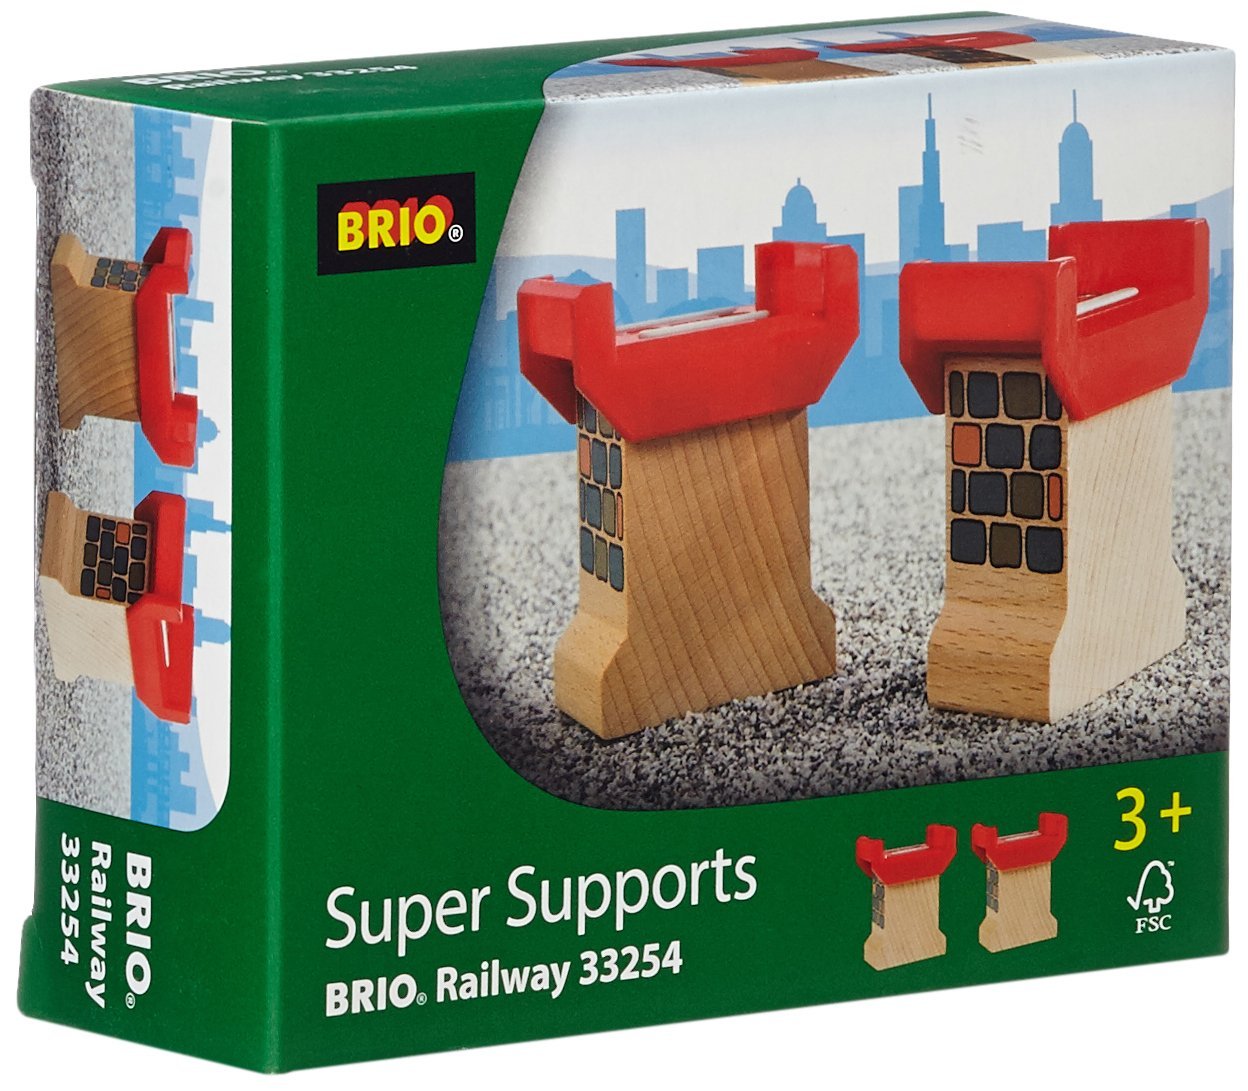 Опоры BRIO для построения моста. Фото N4